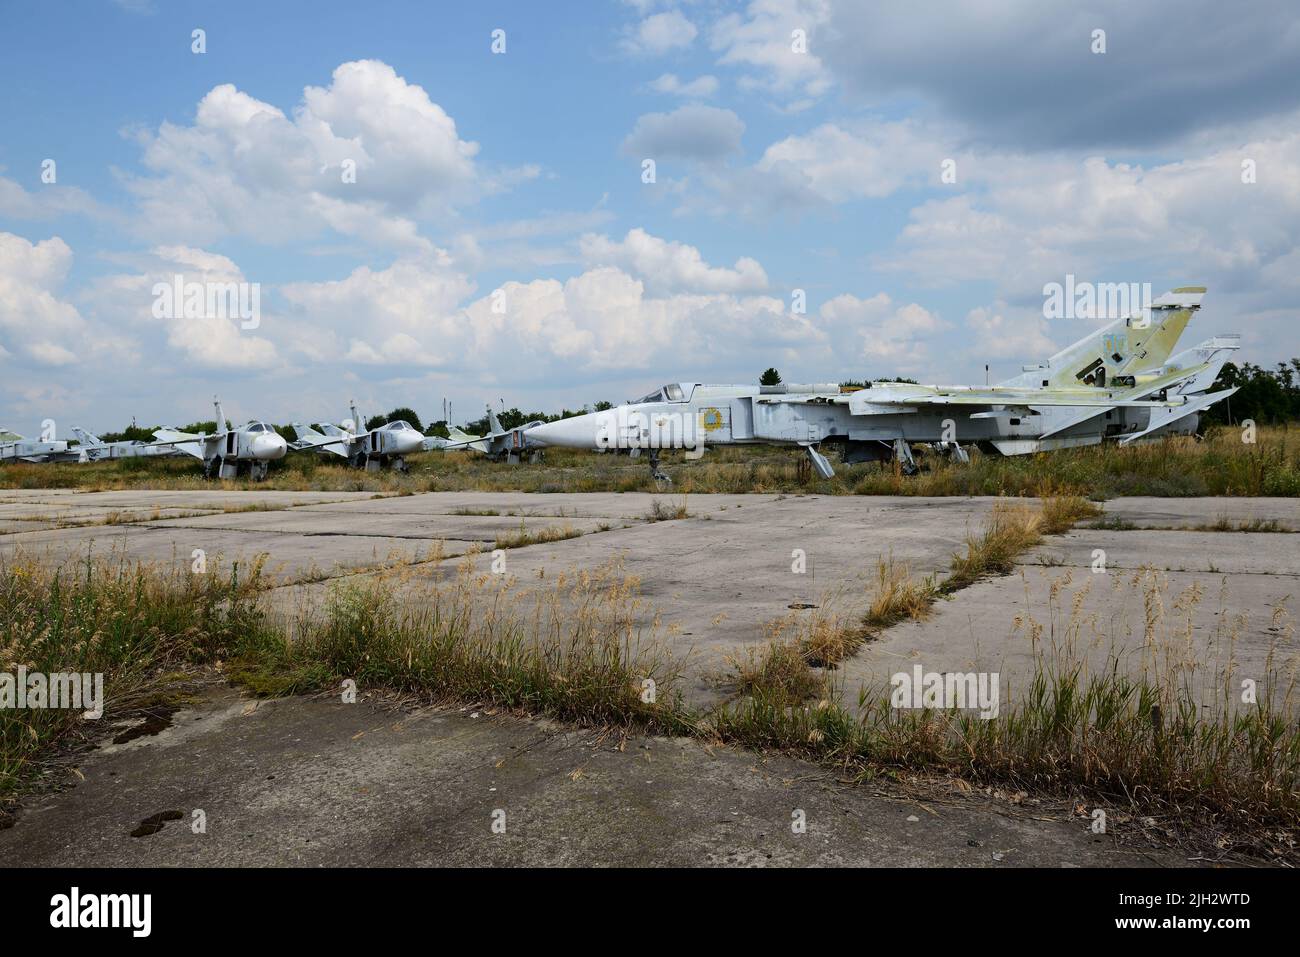 BILA TSERKVA, UCRANIA - 25 DE AGOSTO: La vista sobre los aviones ucranianos Sukhoi Su-24 de ataque supersónico todo-tiempo el 25 de agosto de 2021 en Bila Foto de stock